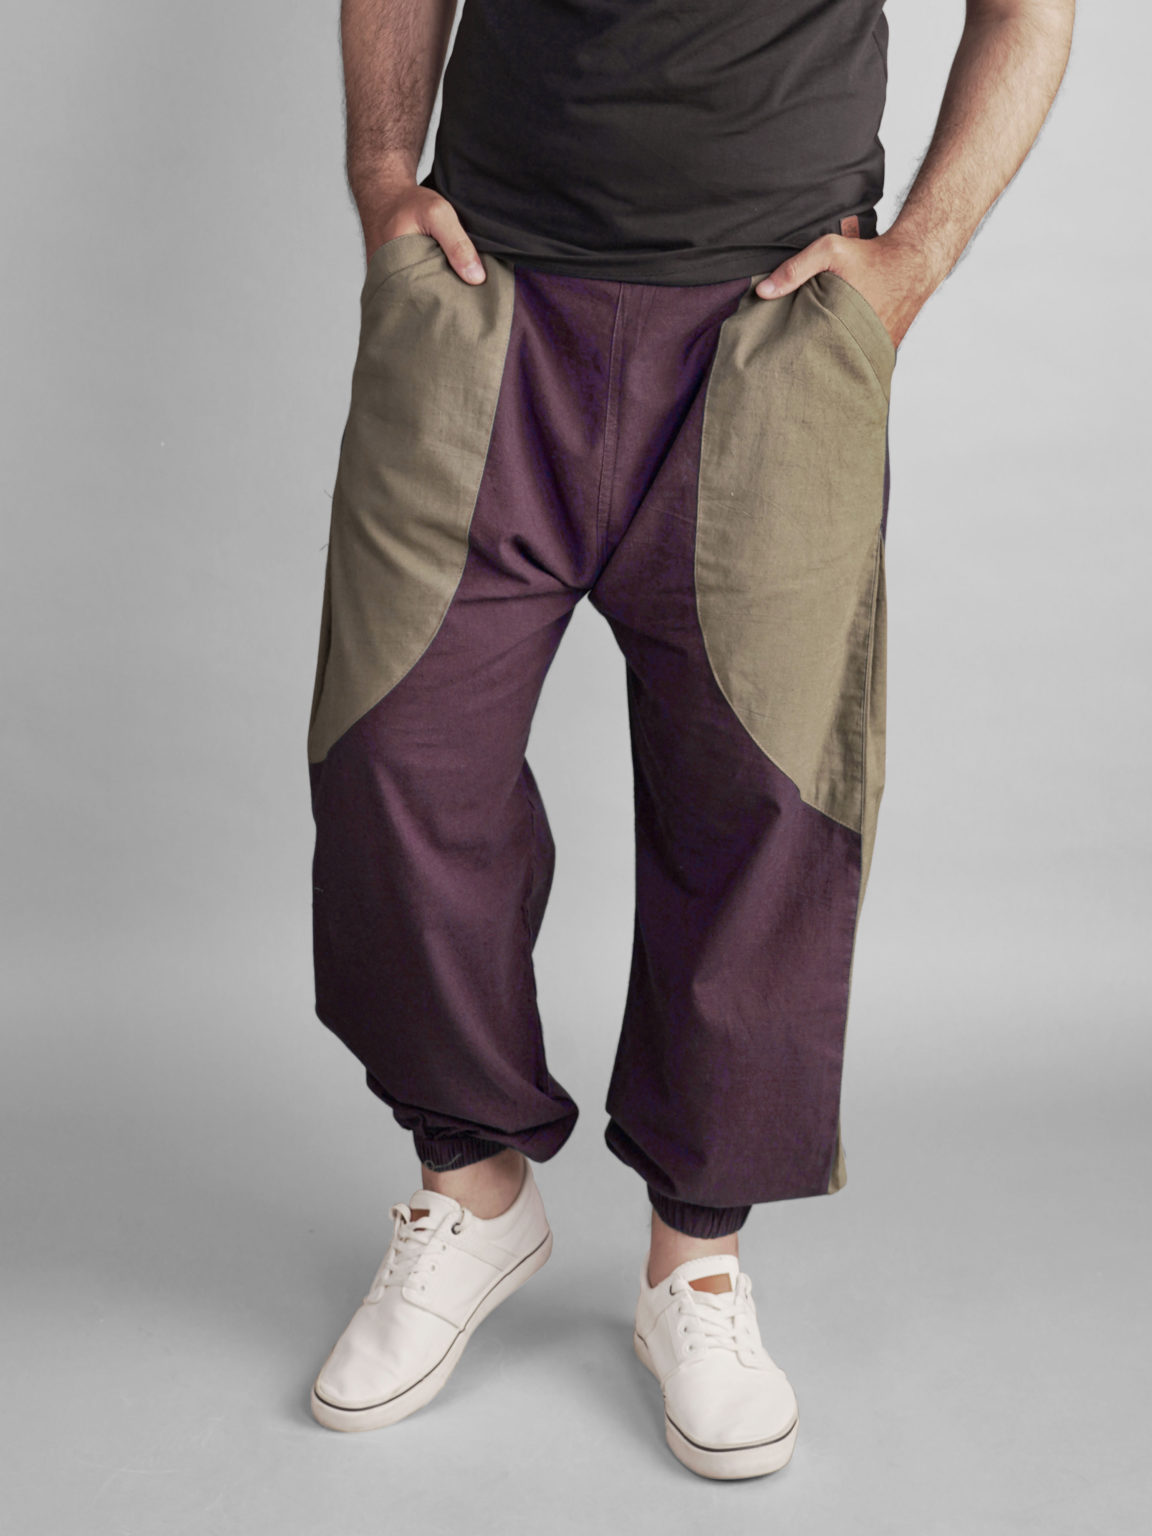 Hoppers Online - Buy Harem Pants for Men & Women India